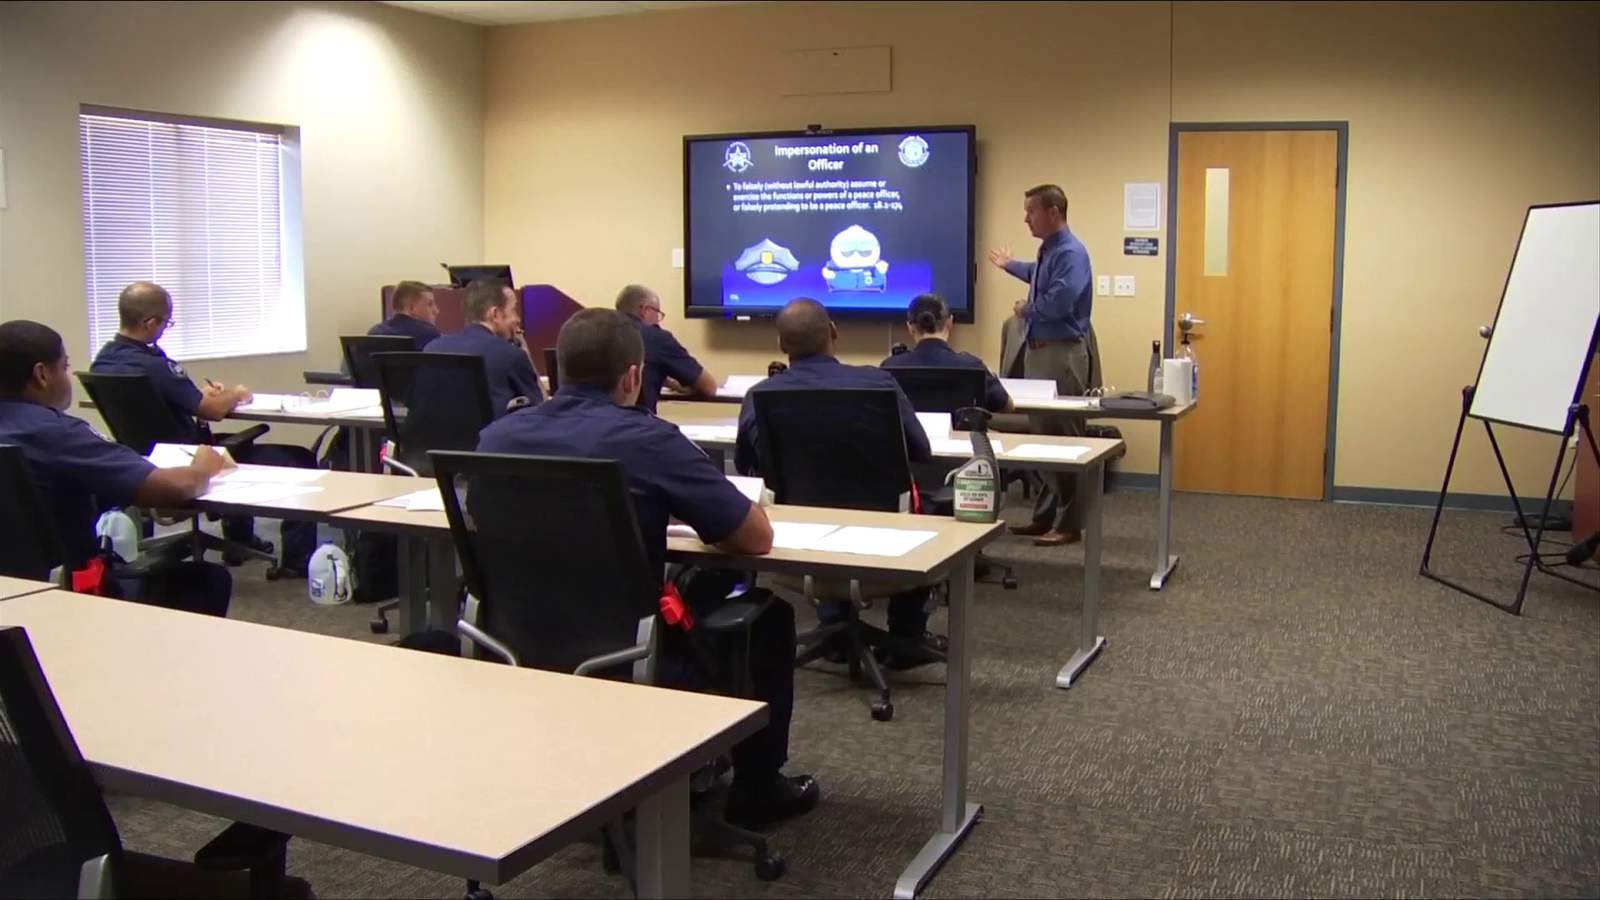 Roanoke city police academy battling unprecedented challenges head-on